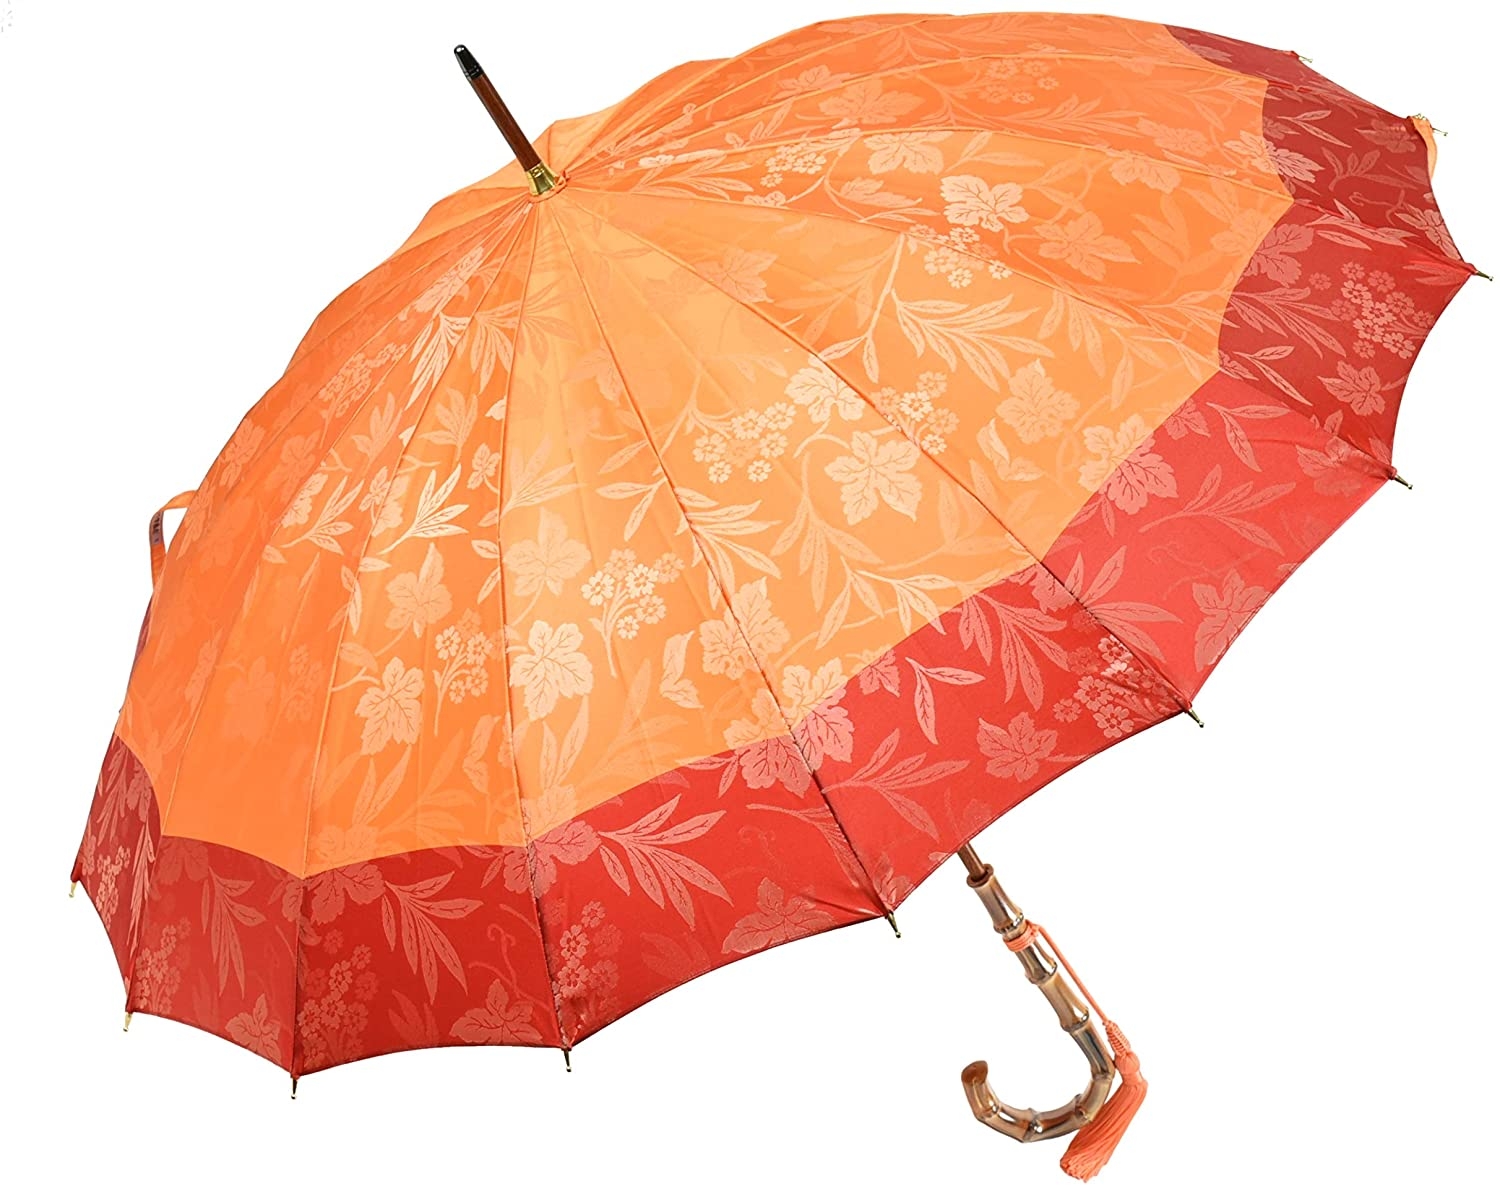 女性に人気のおしゃれなレディース傘 おすすめブランドランキング30選 21年版 ベストプレゼントガイド